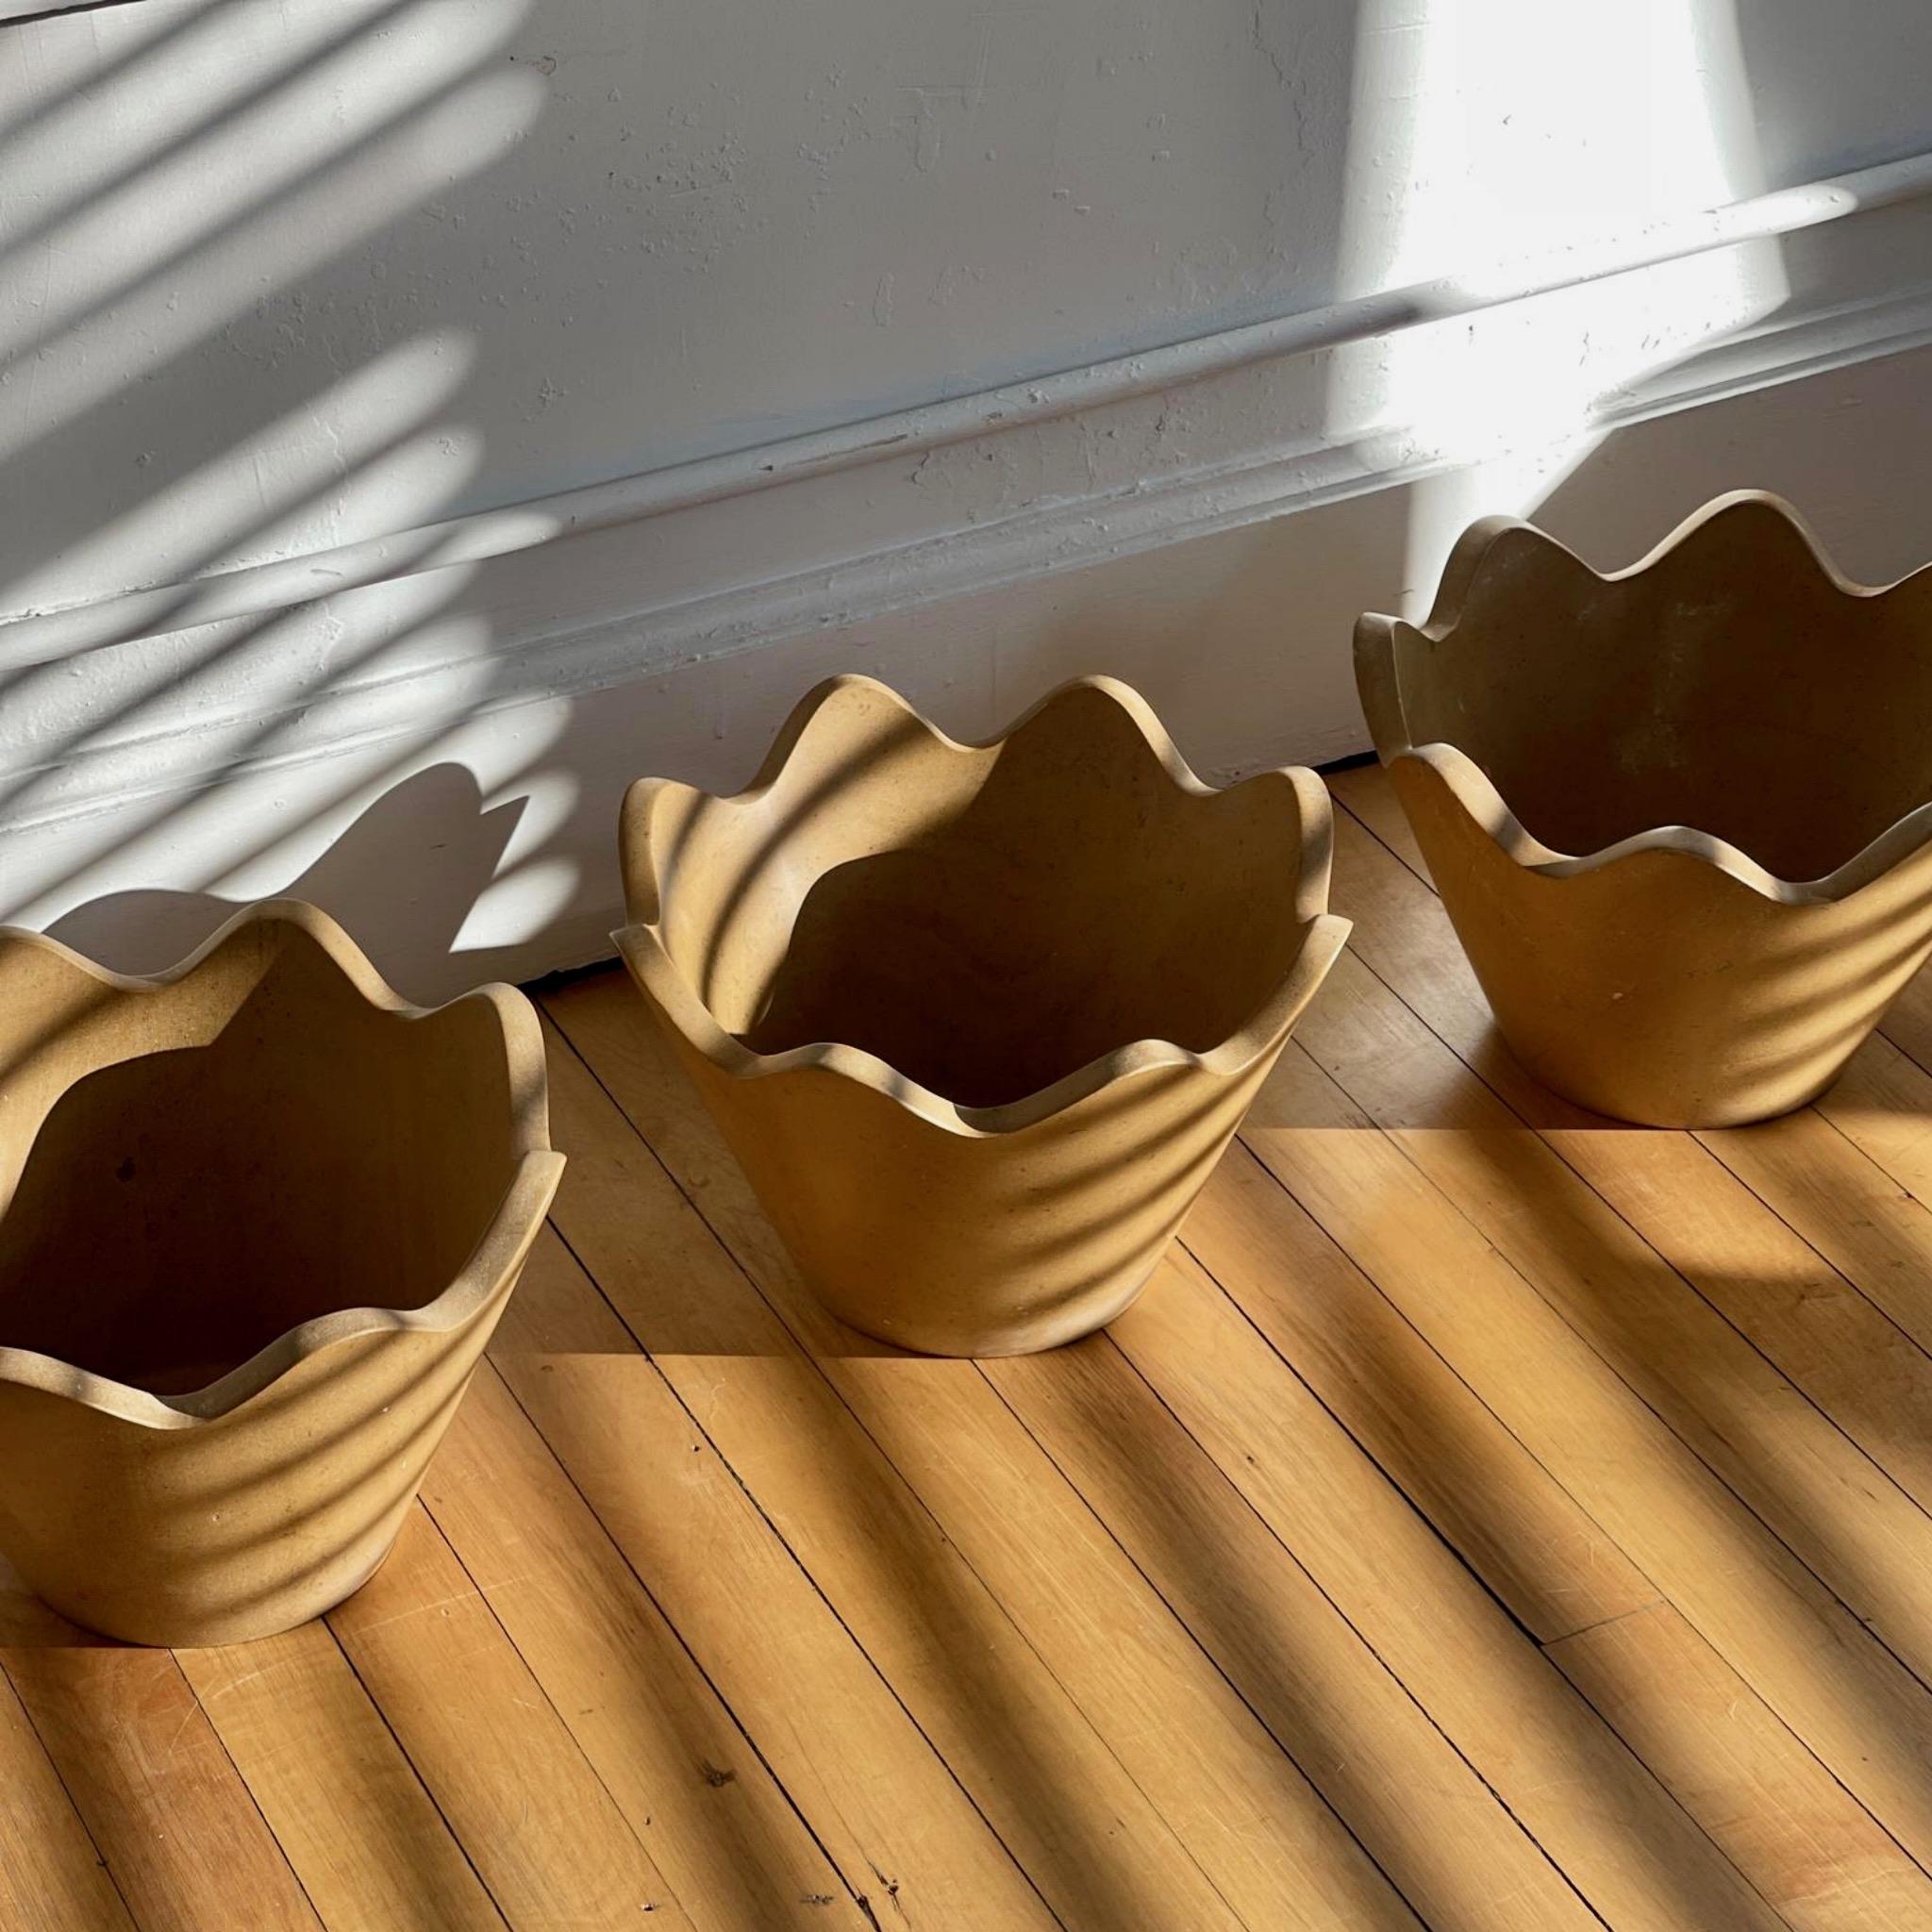 Wir stellen Ihnen die exquisite Blossom Bowl vor, ein wahres Meisterwerk, das exklusiv von Anastasio Home hergestellt wird. 

Dieses funktionale Kunstobjekt, das in limitierter Auflage hergestellt wird, ist vielseitig einsetzbar: Es kann als